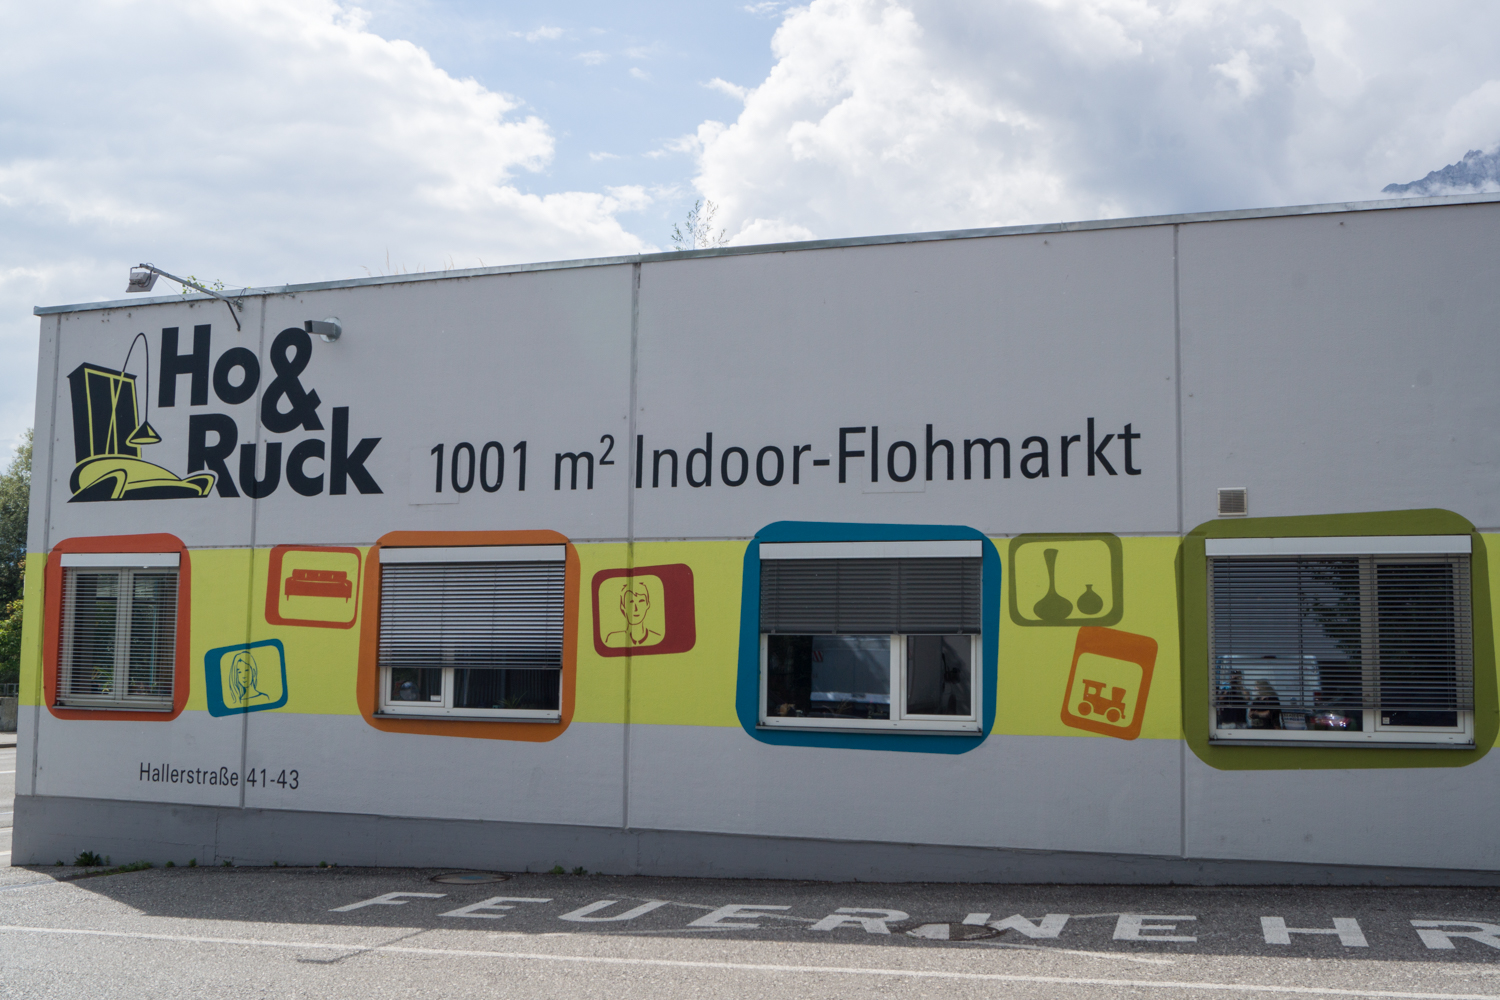 Ho & Ruck | Indoor-Flohmarkt Innsbruck 